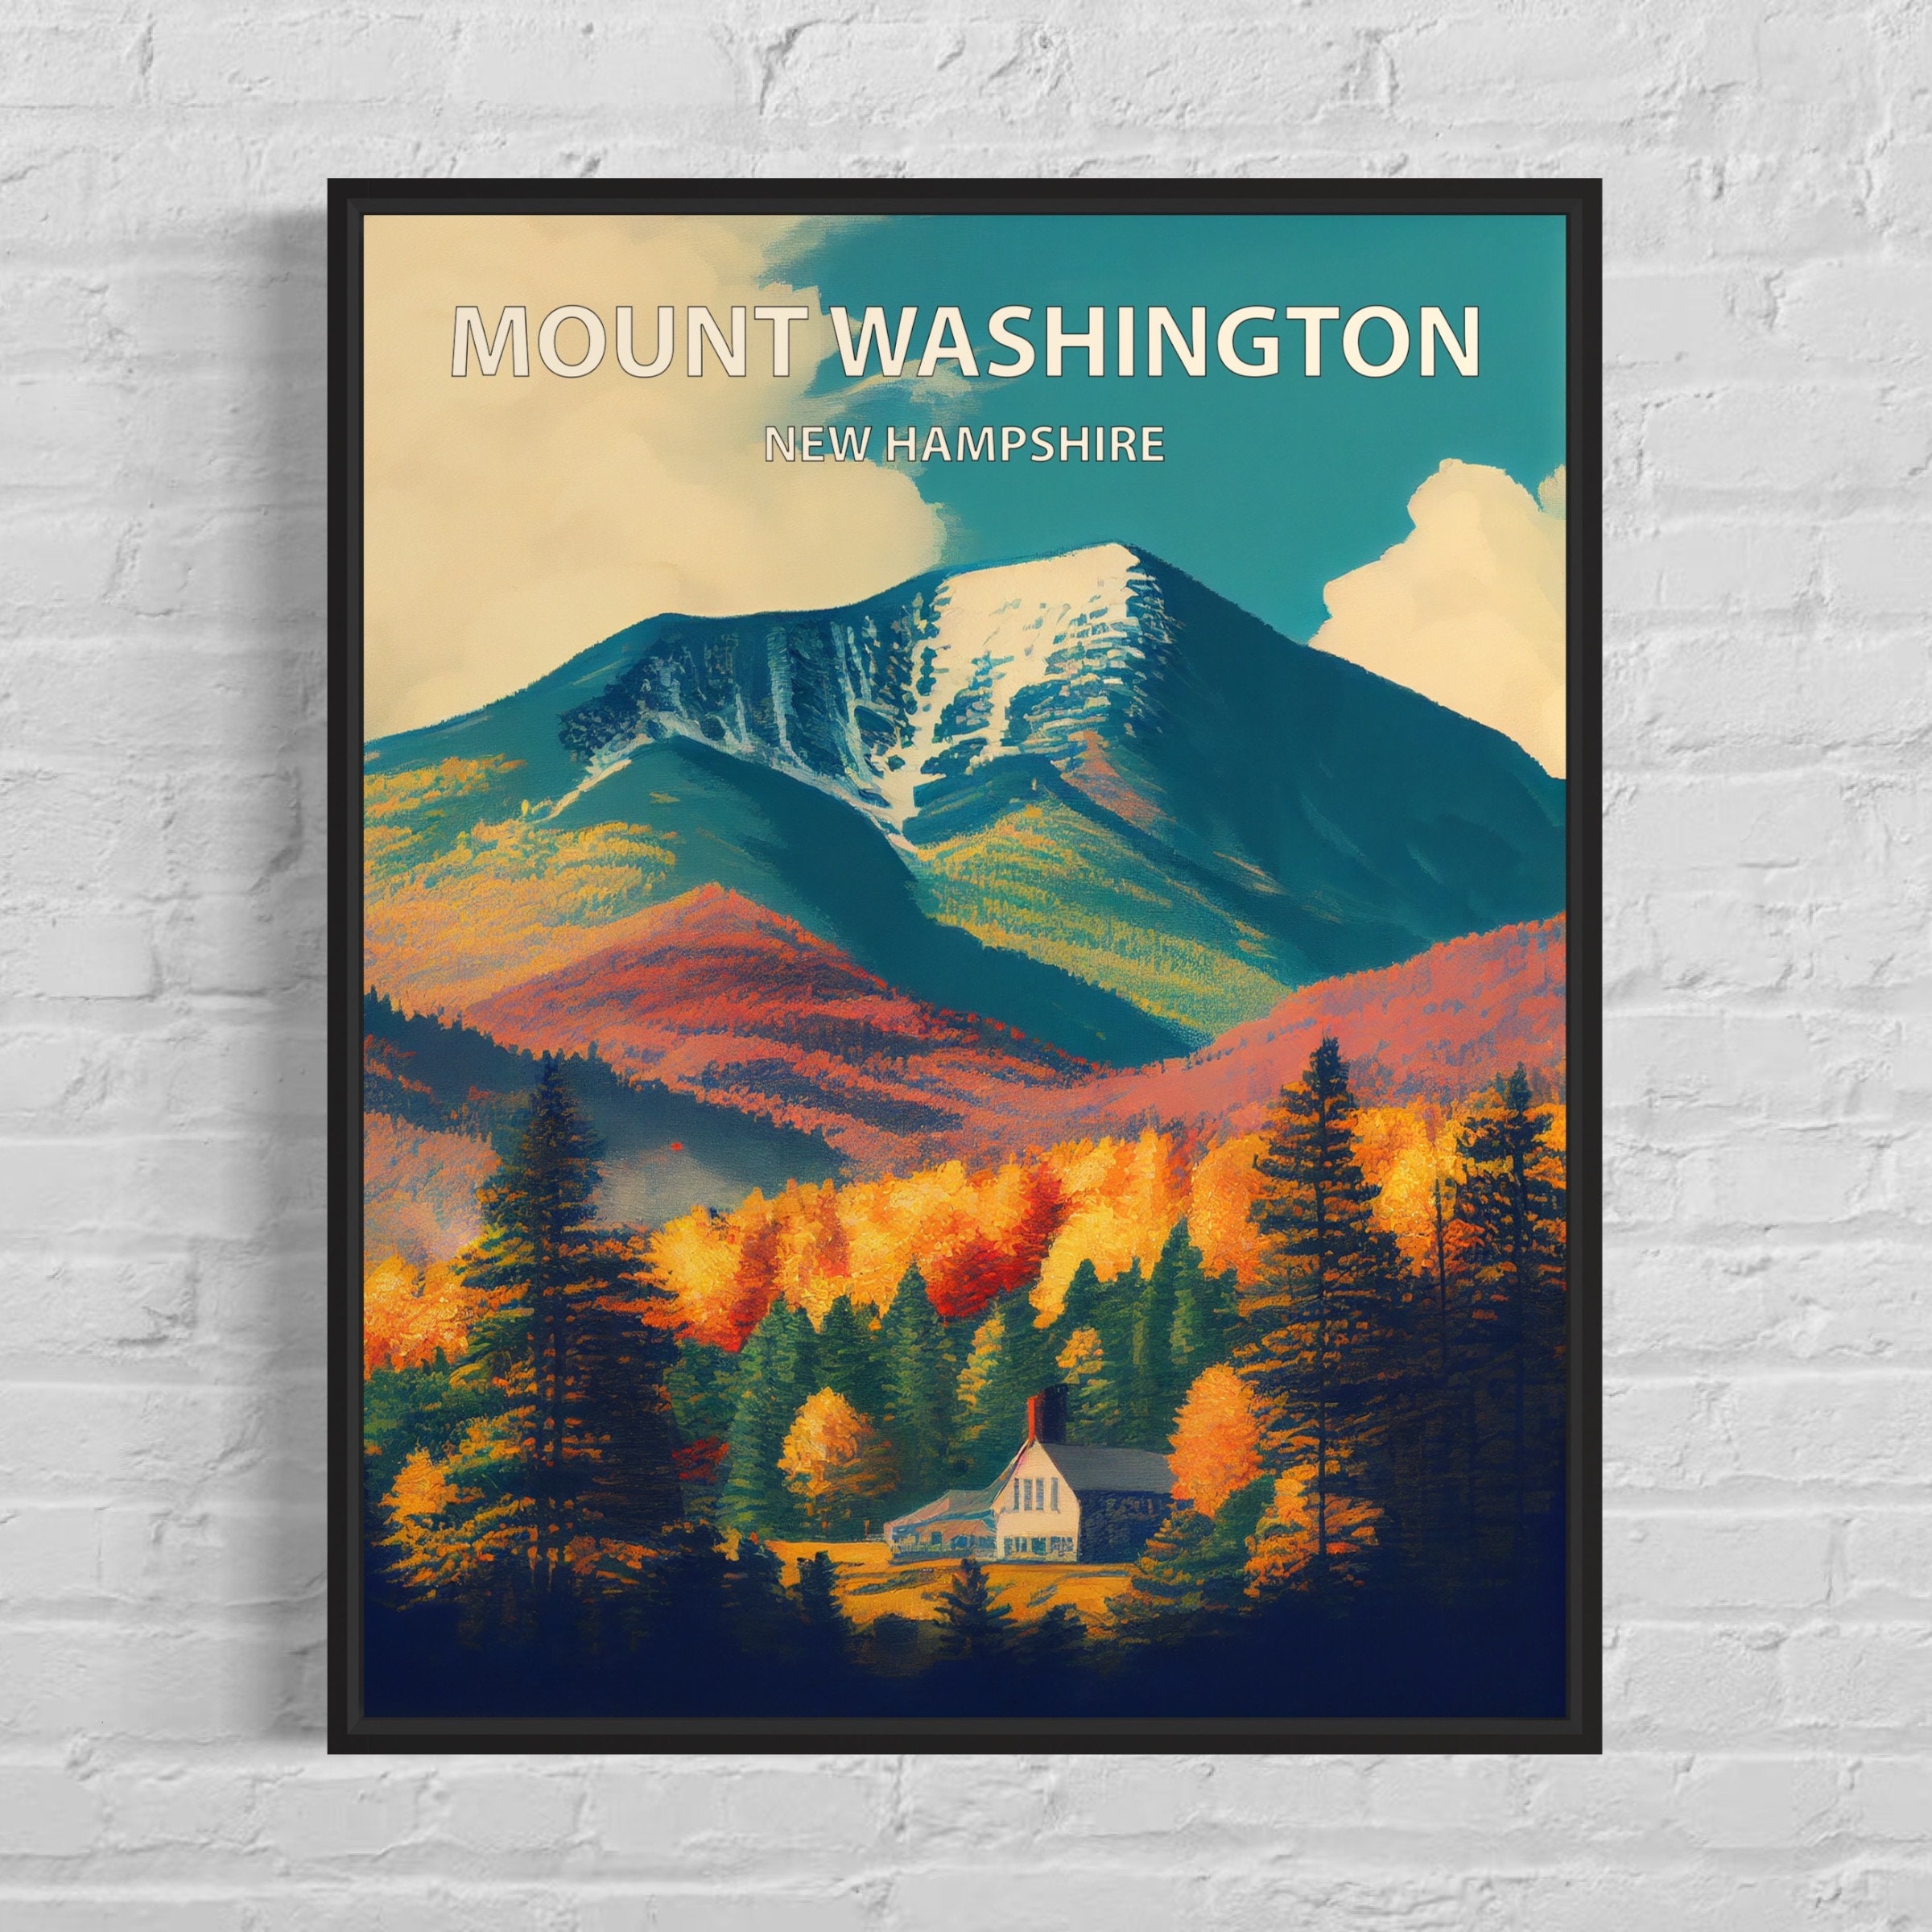 Mount Washington New Hampshire Art Print Mount Washington image image